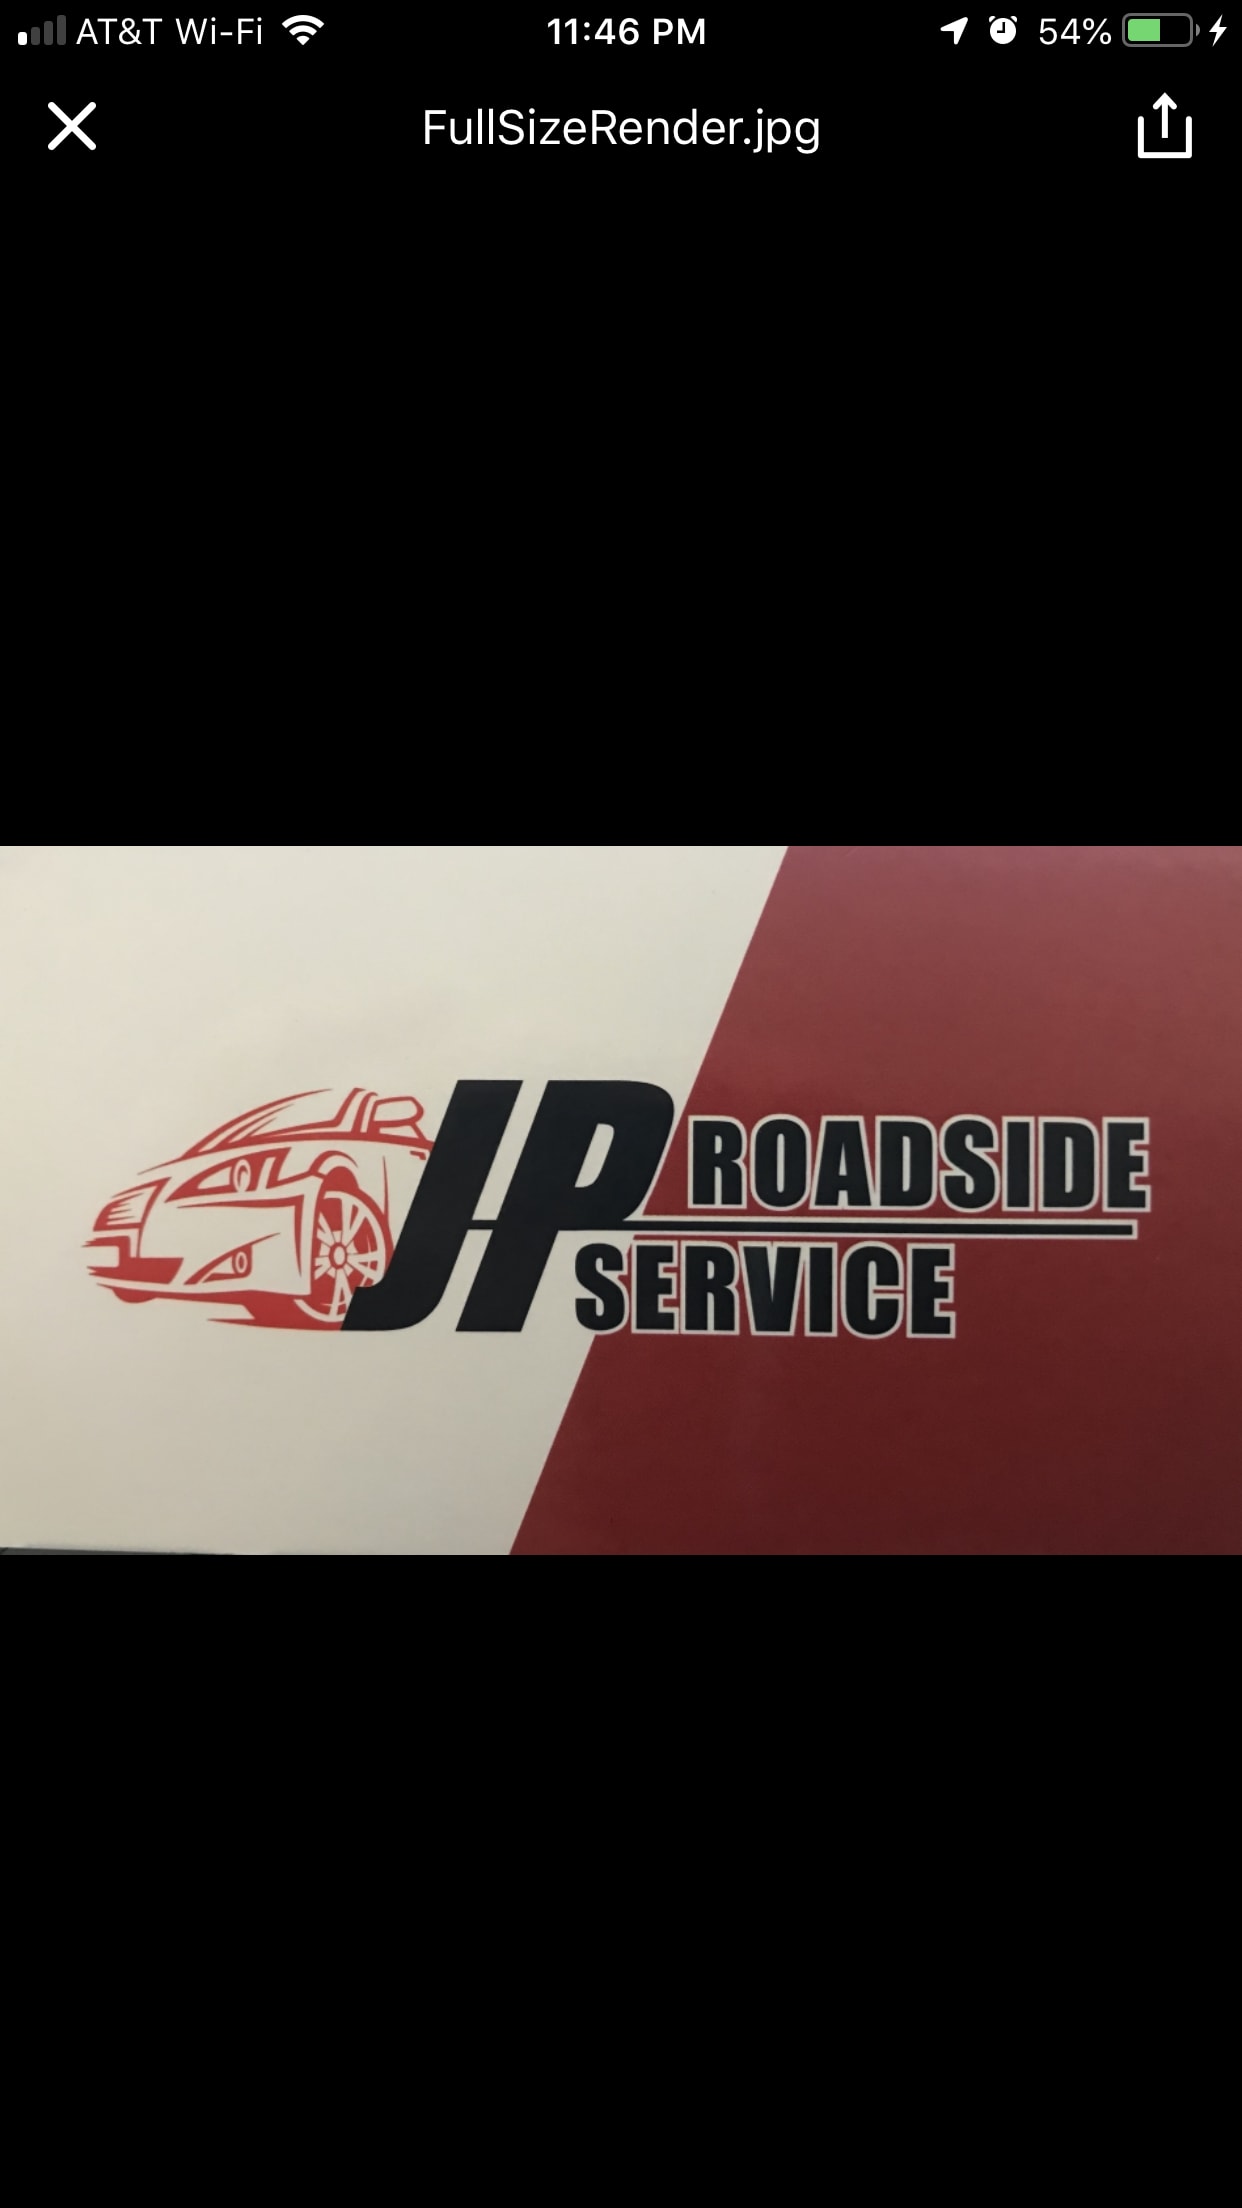 JP Roadside Service